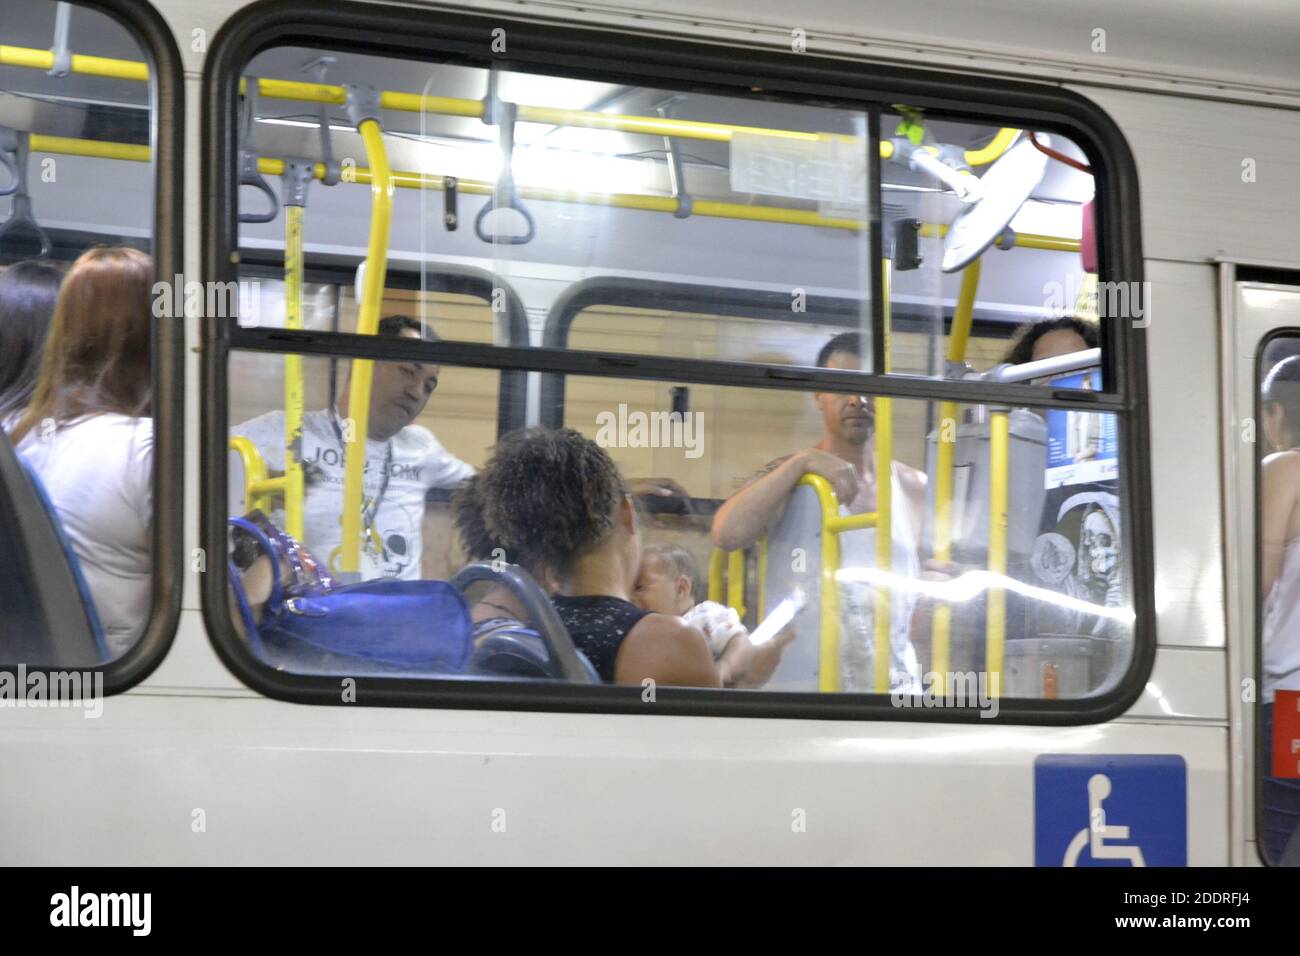 Finestra dell'autobus, con passeggeri all'interno, uomini e donne, senza maschera, senza protezione, In fermata dell'autobus, foto notturna, Brasile, Sud America Foto Stock